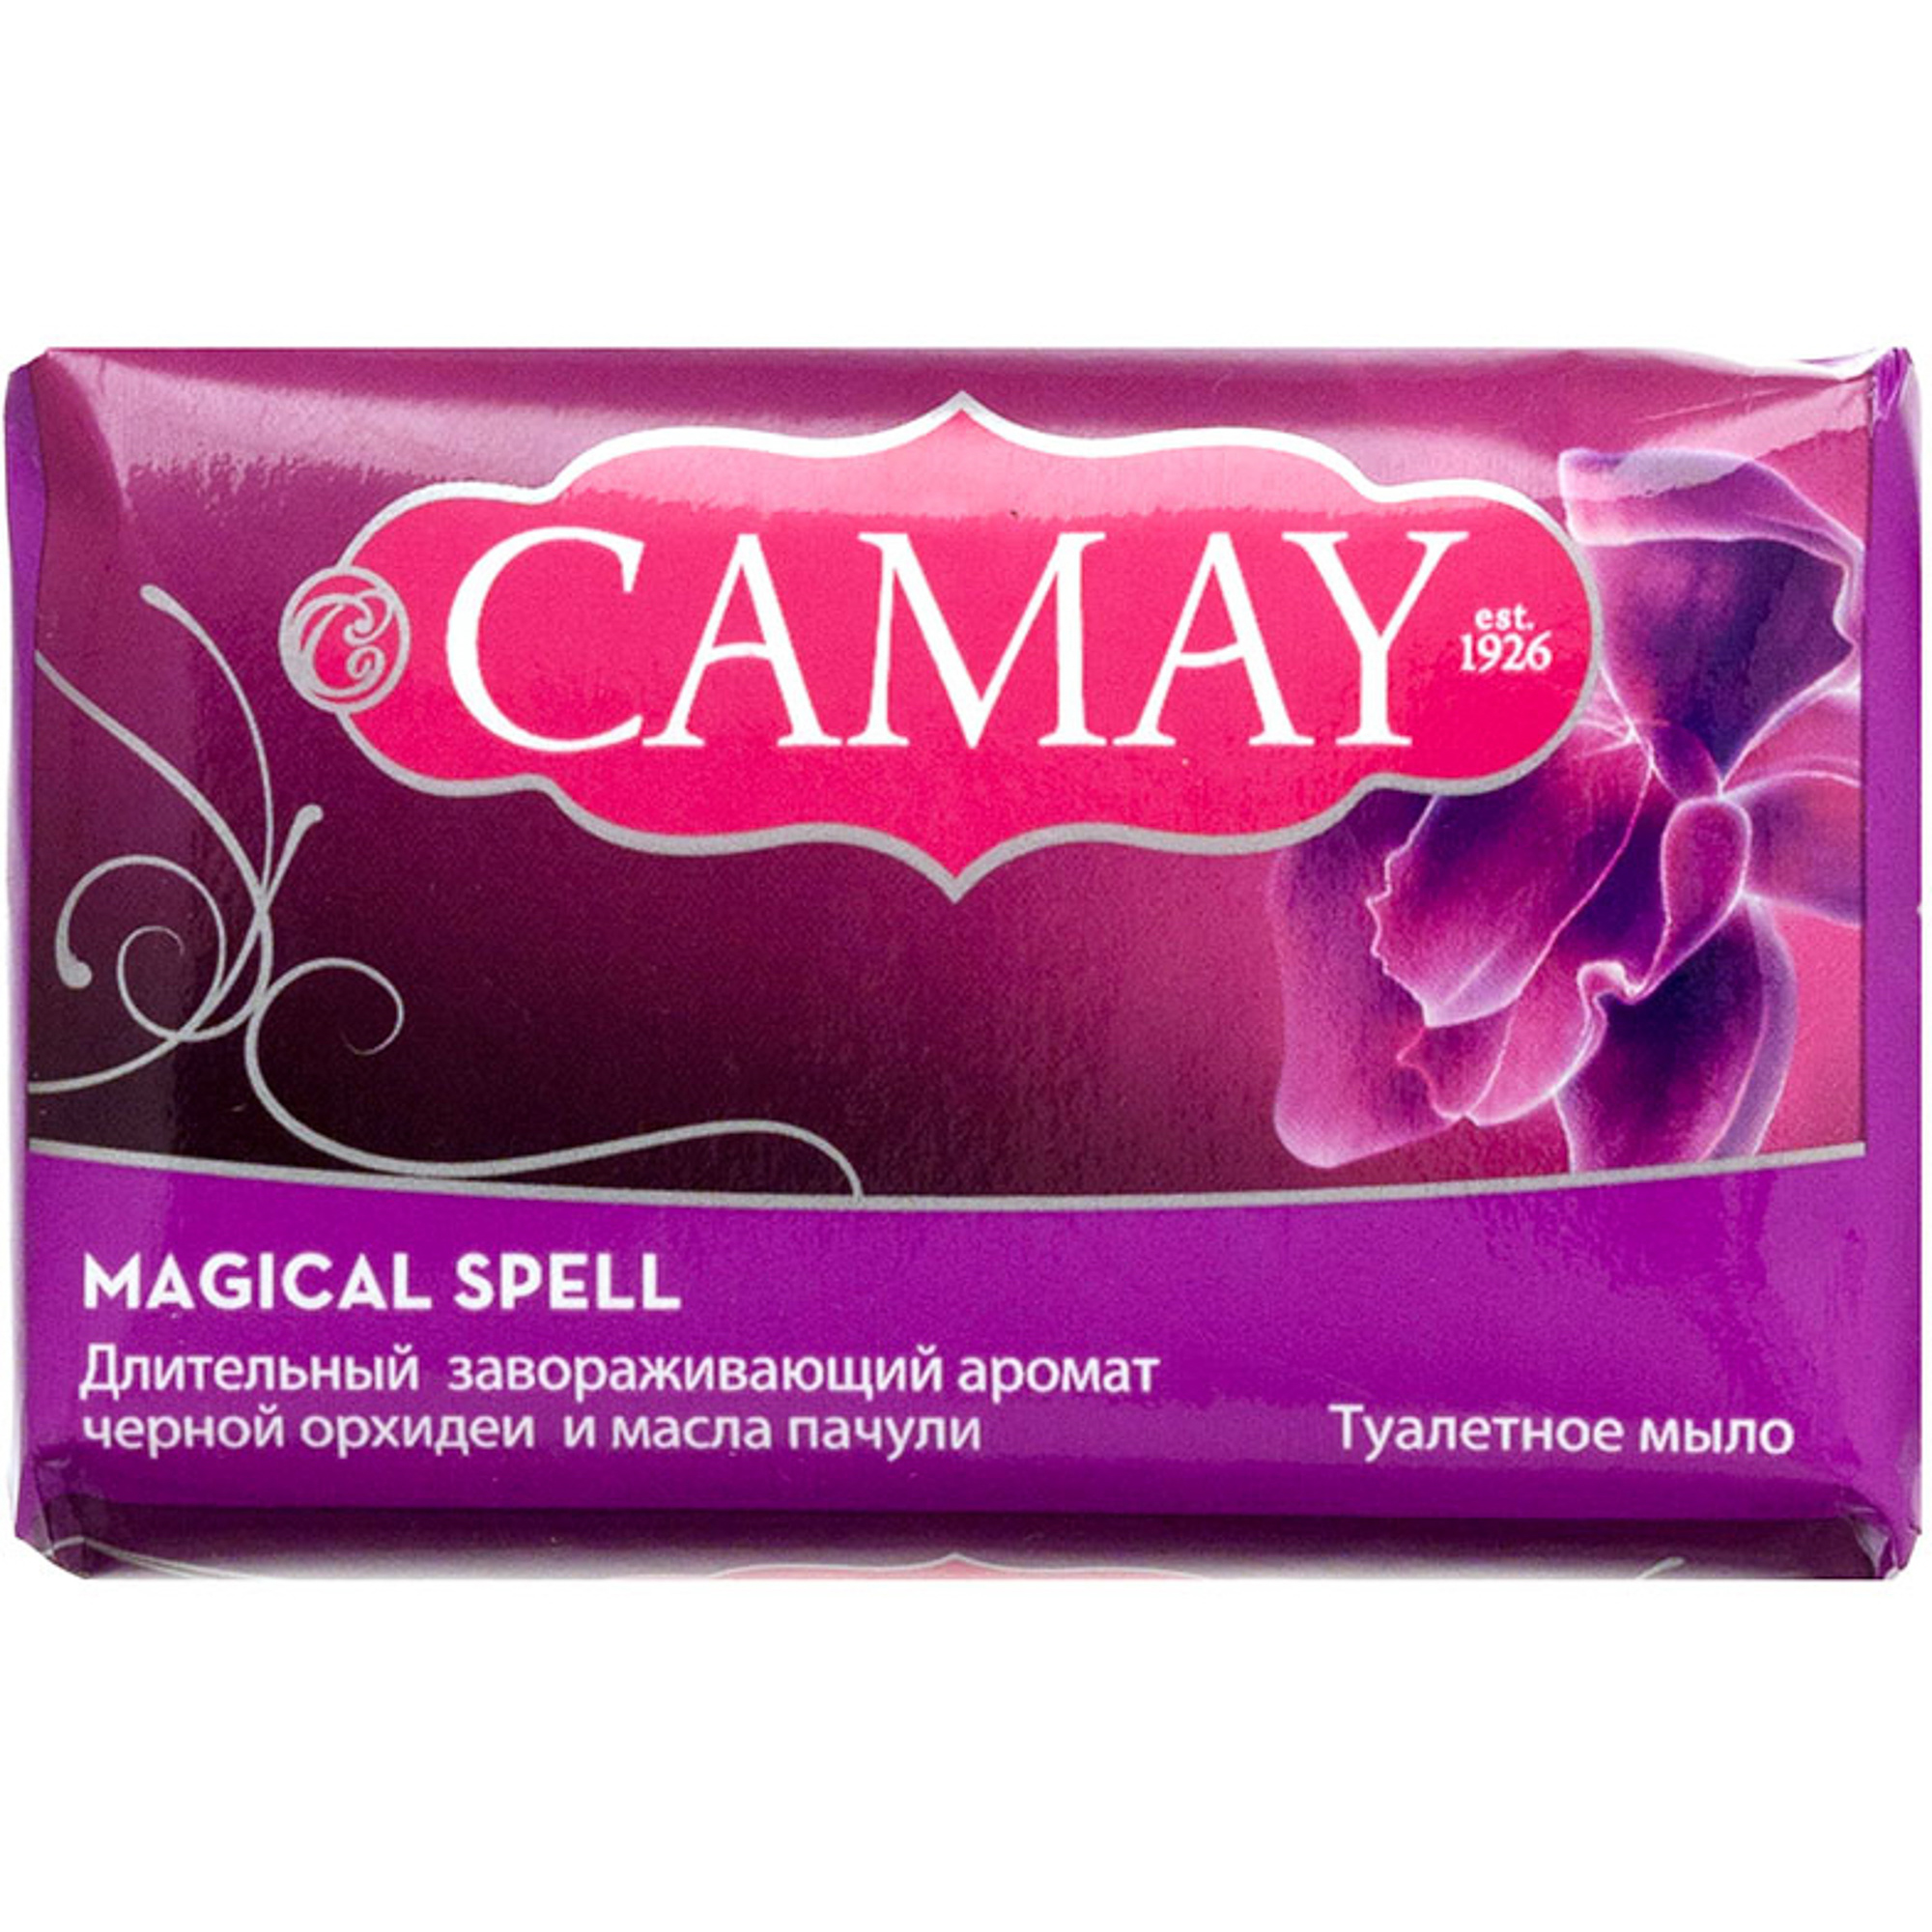 Мыло Camay Магическое заклинание 85 г туалетное мыло магическое заклинание с ароматом черной орхидеи 85г 2 шт